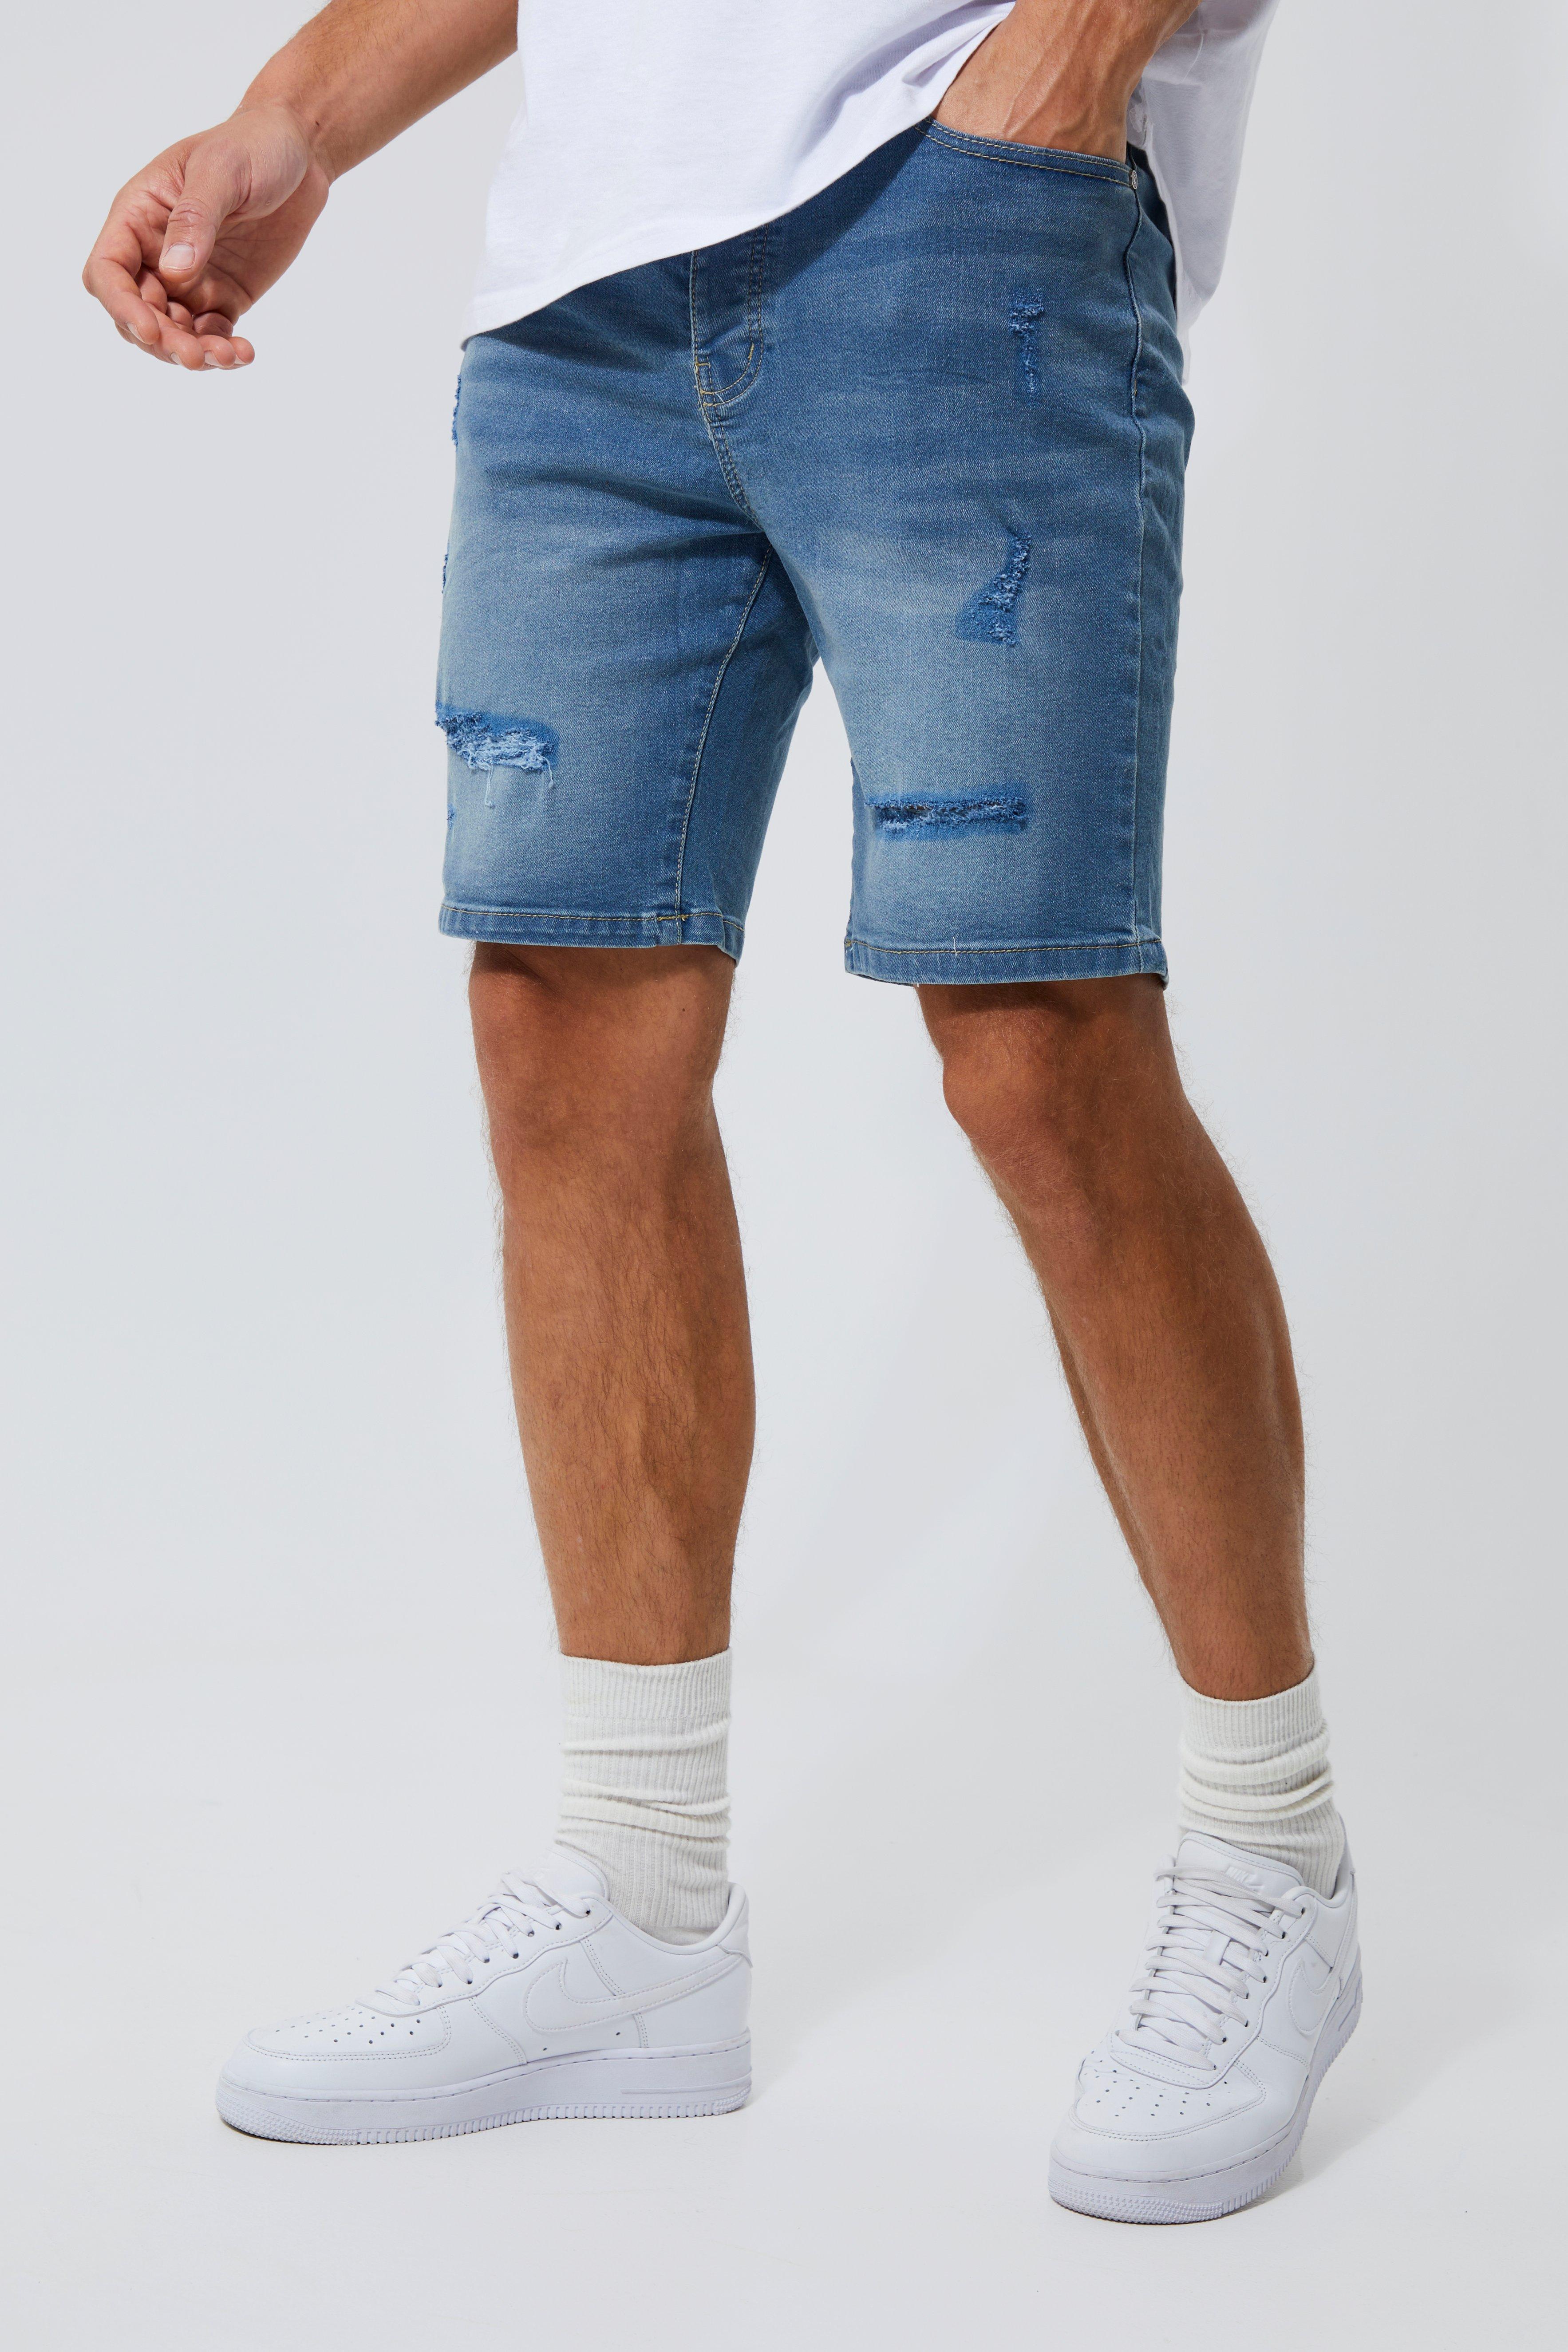 tall - short en jean déchiré homme - bleu - 36, bleu